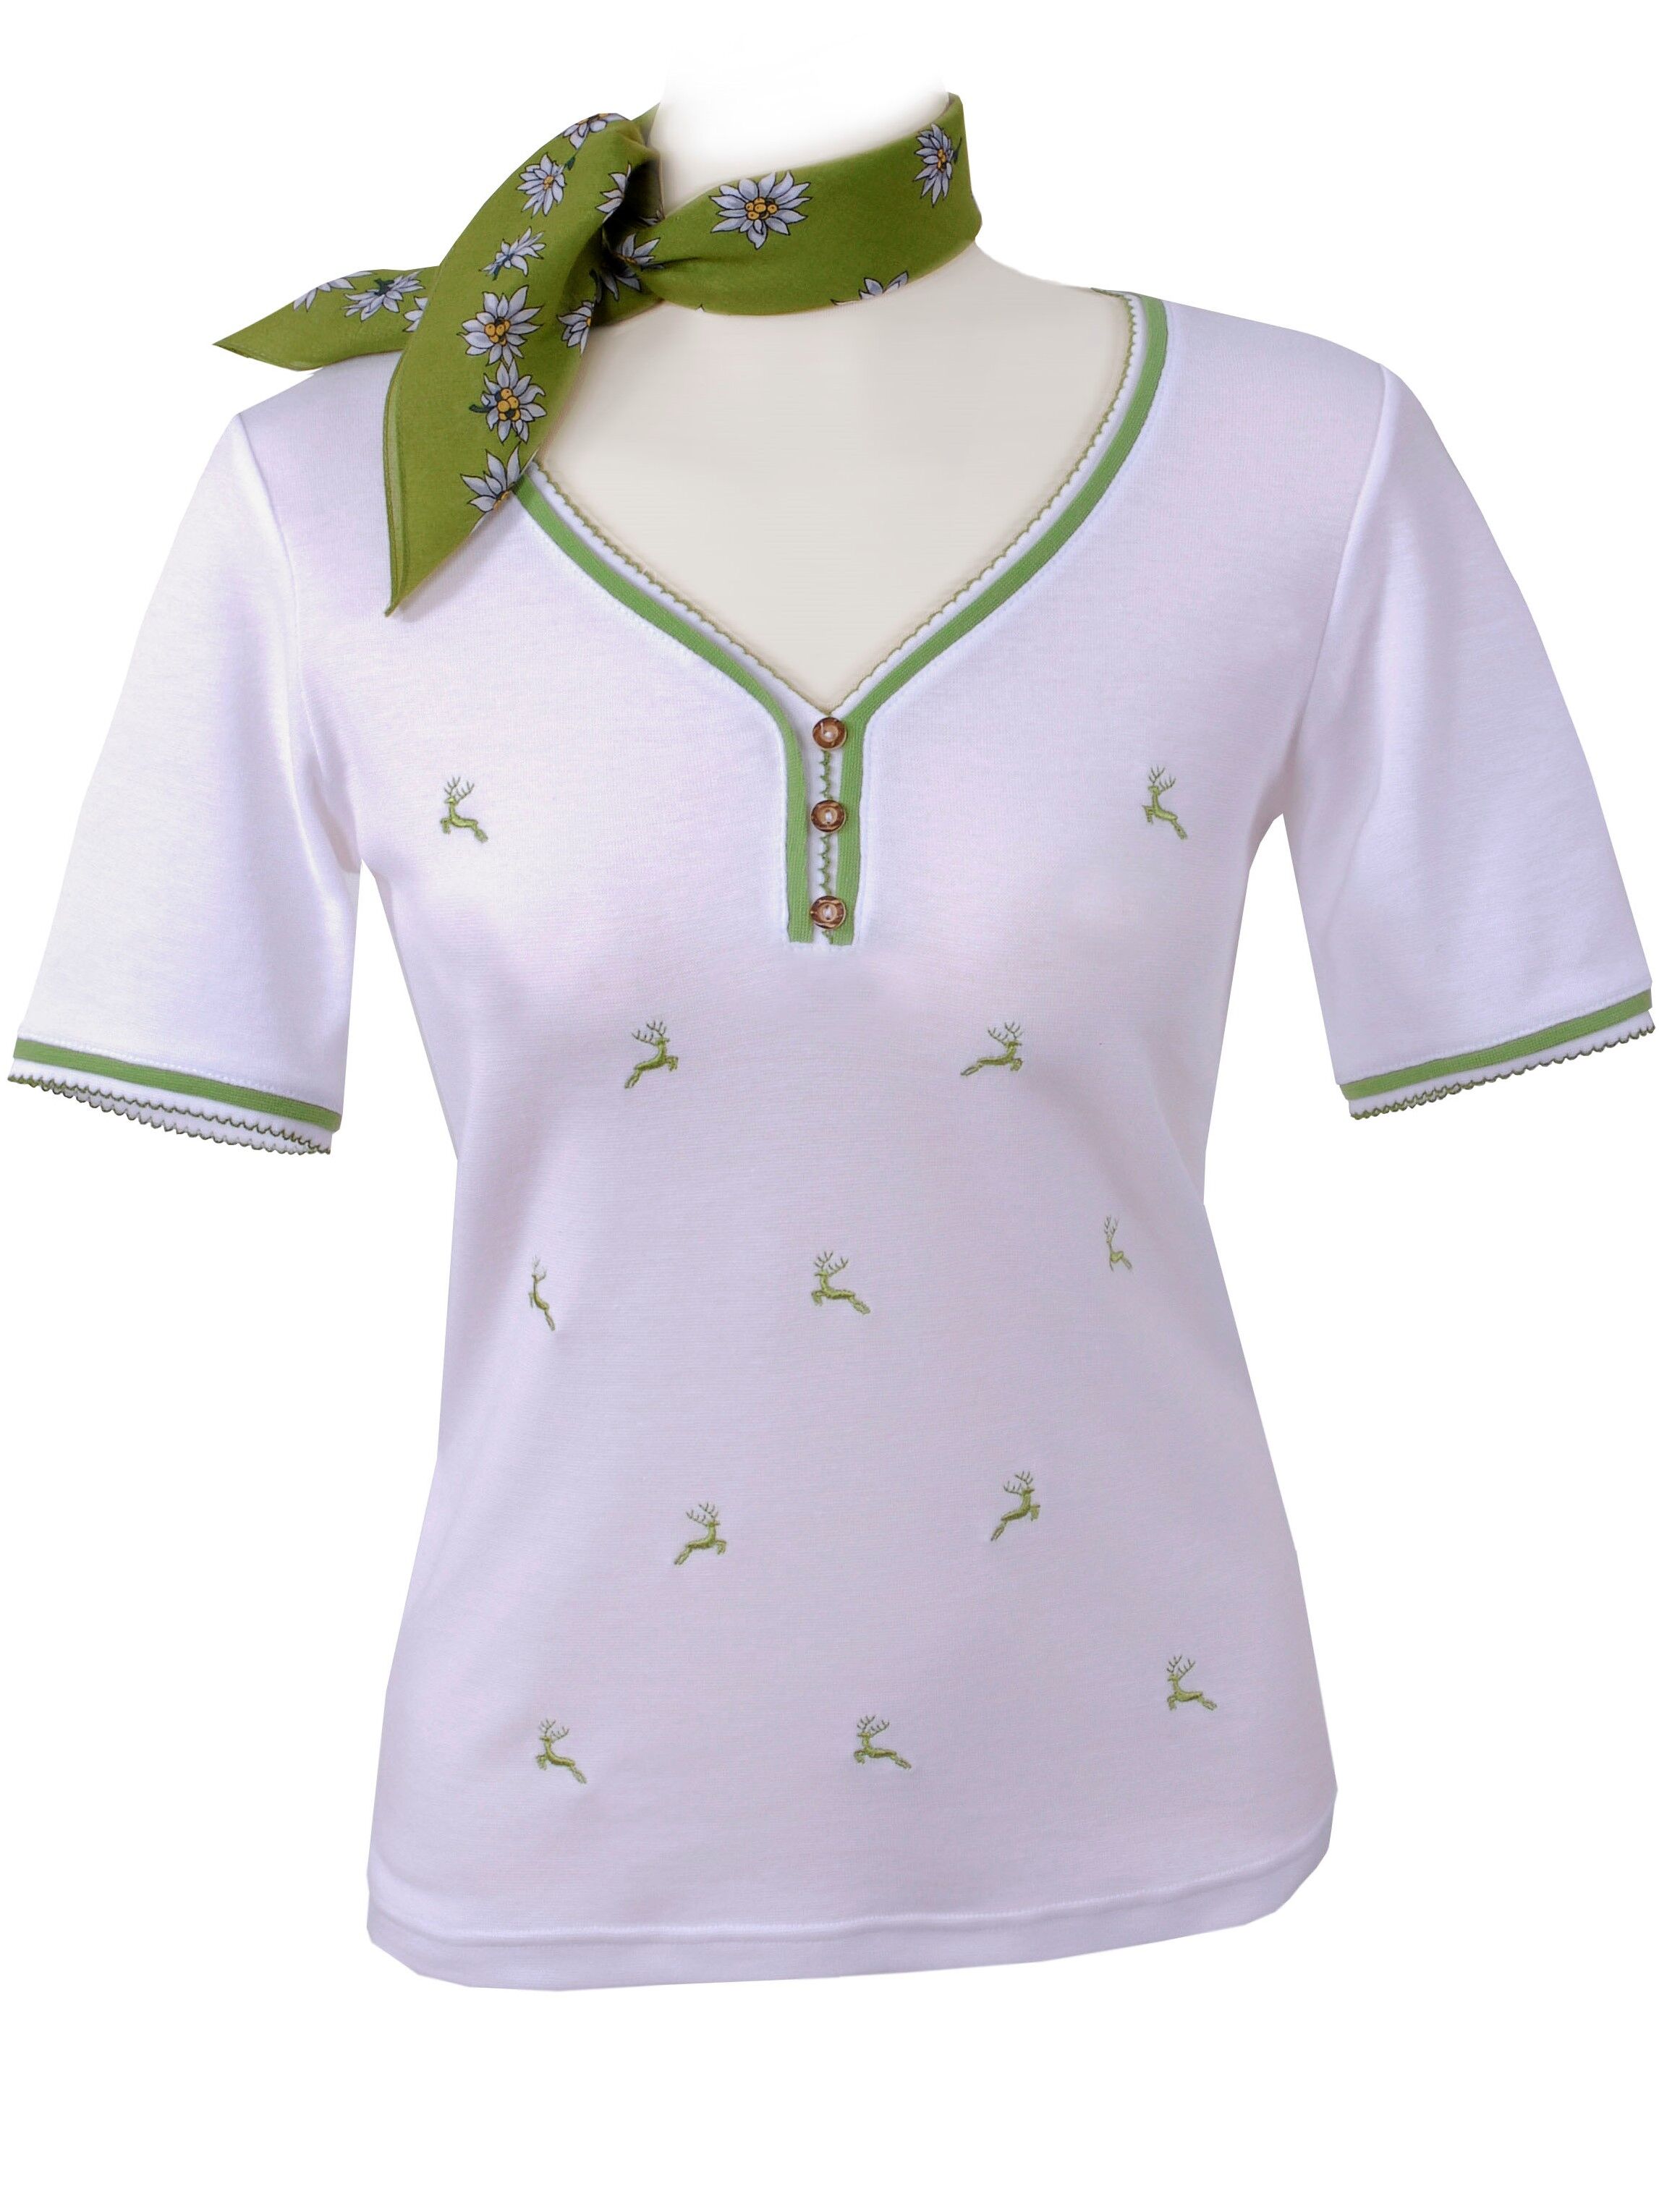 Premium Trachtenshirt Damen T-Shirt Hirsch-Stickerei Weiß-Grün 